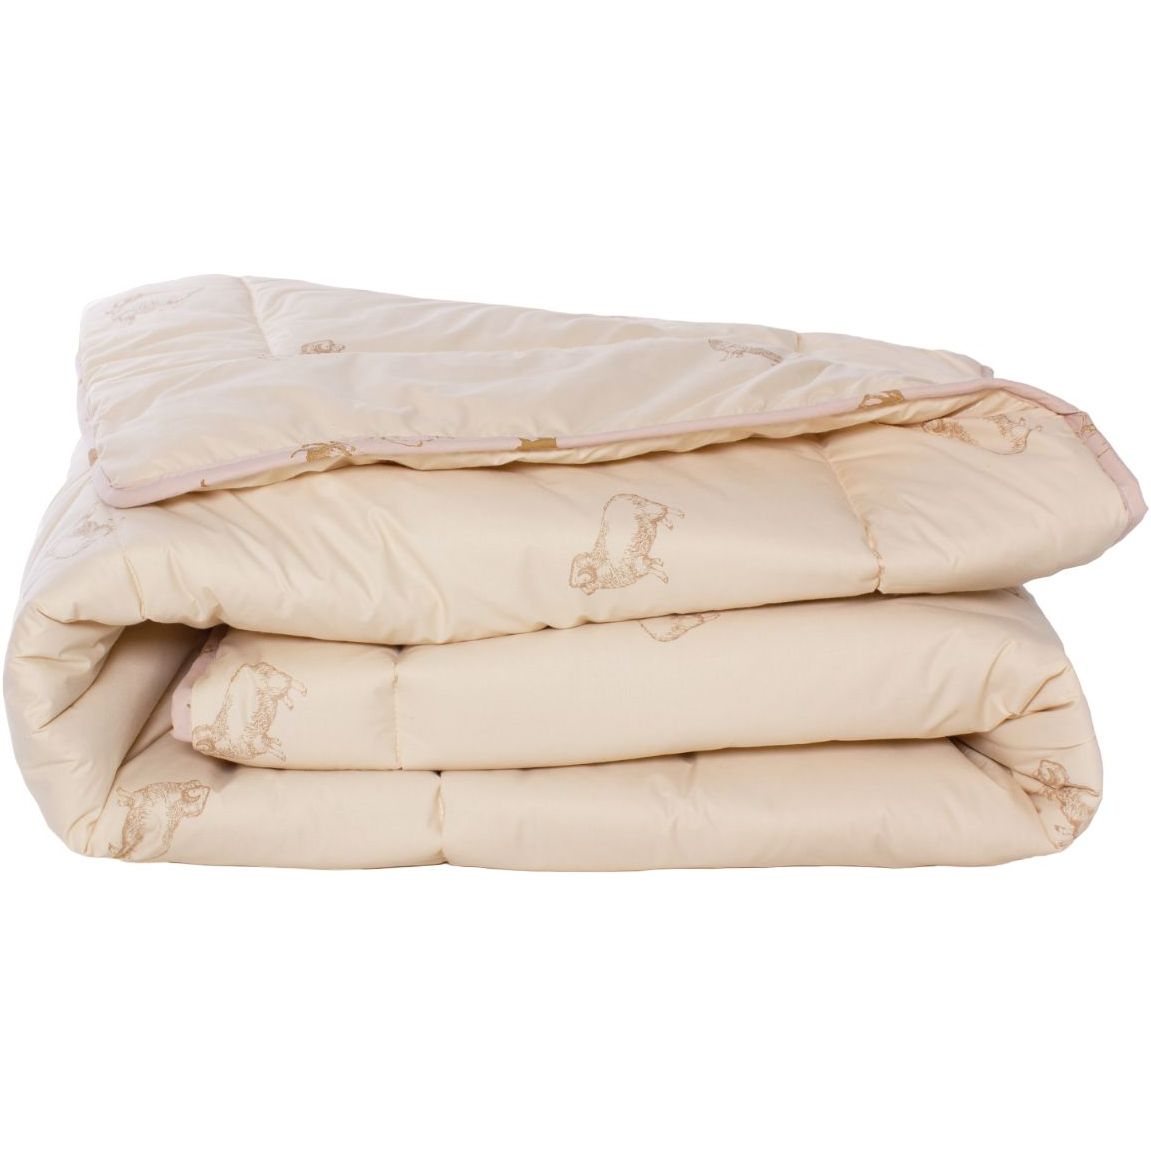 Одеяло шерстяное MirSon Gold Camel №023, демисезонное, 140x205 см, кремовое - фото 1